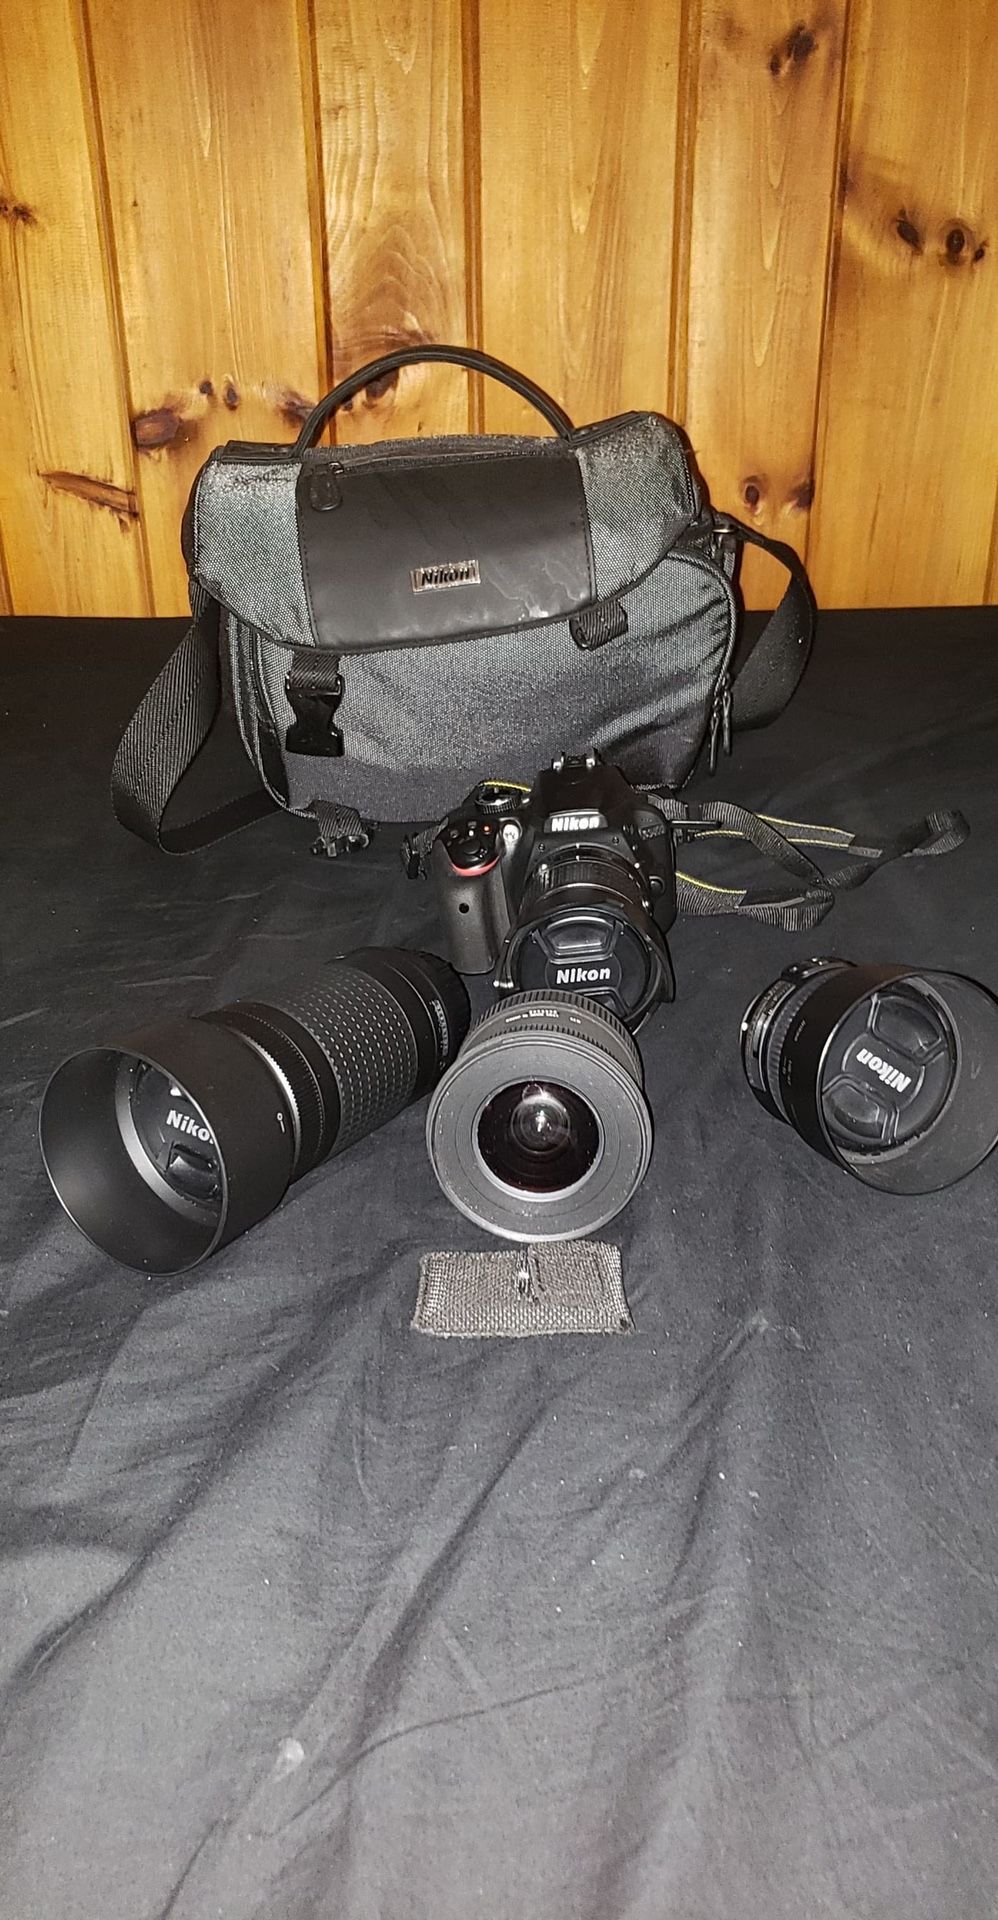 Nikon DSLR Camera 3400 w/ accessories, 24.2 MEGAPIXELS, DX FORMAT